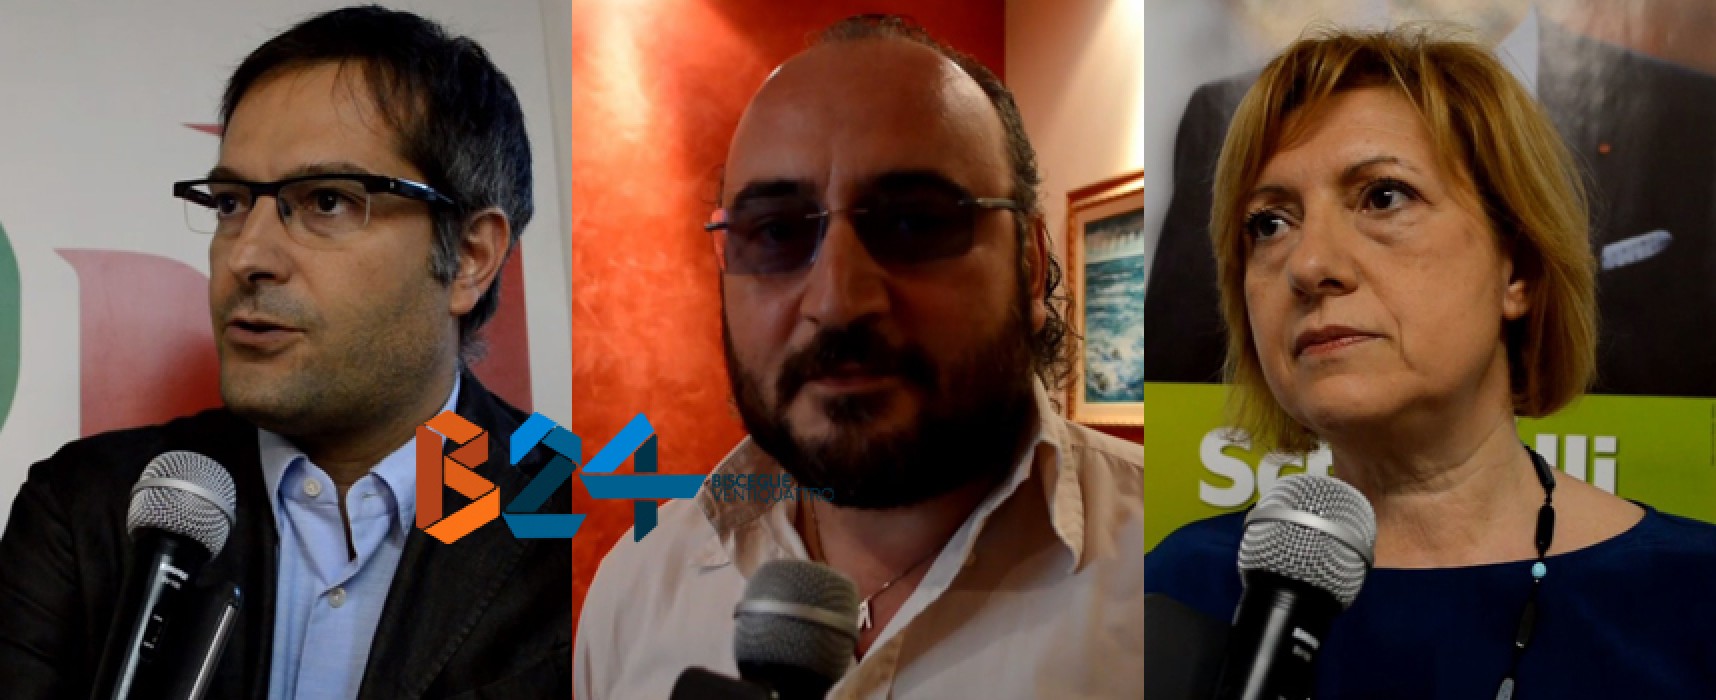 Analisi del voto regionale, intervista a Tonia Spina, Angarano e Prete / VIDEO